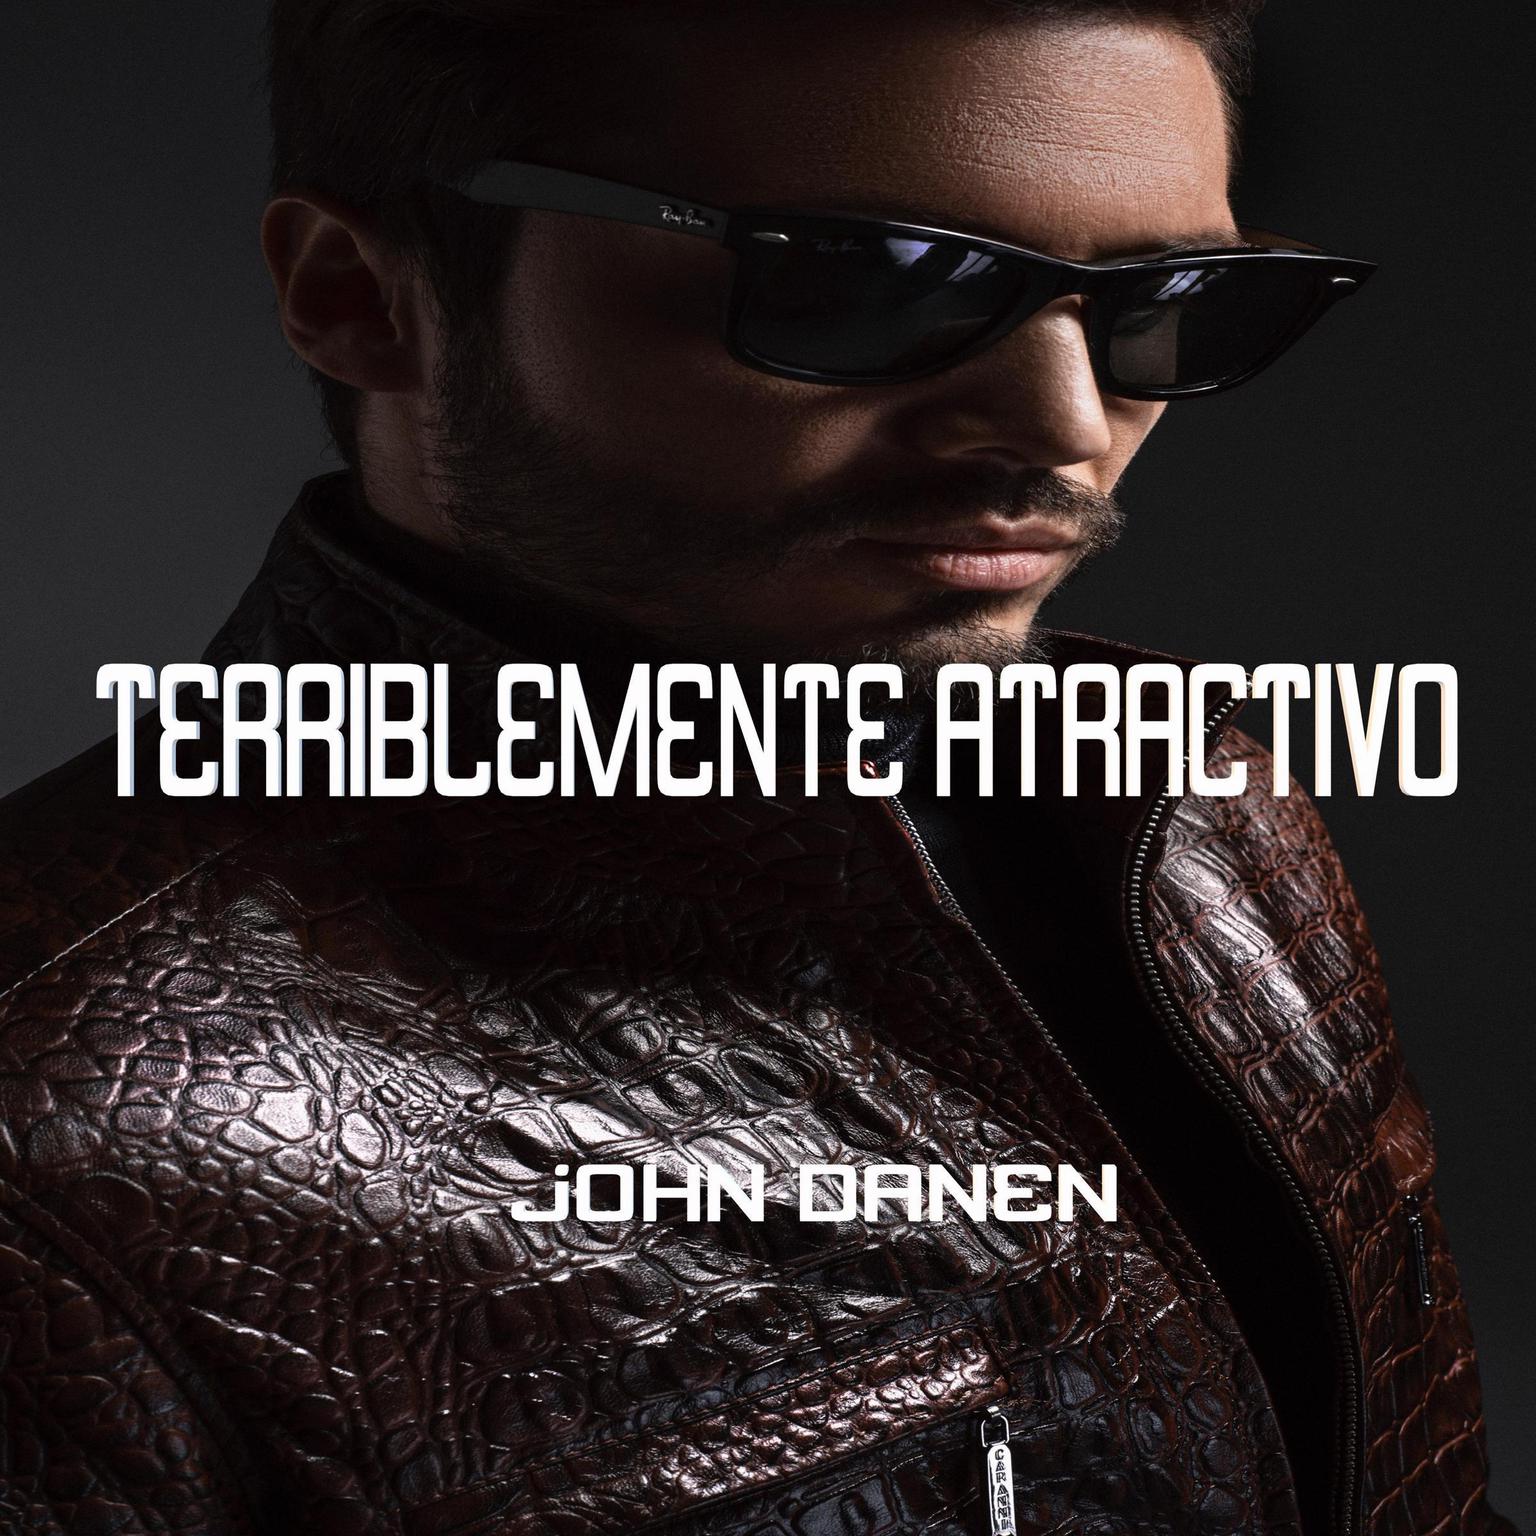 Terriblemente atractivo Audiobook, by John Danen